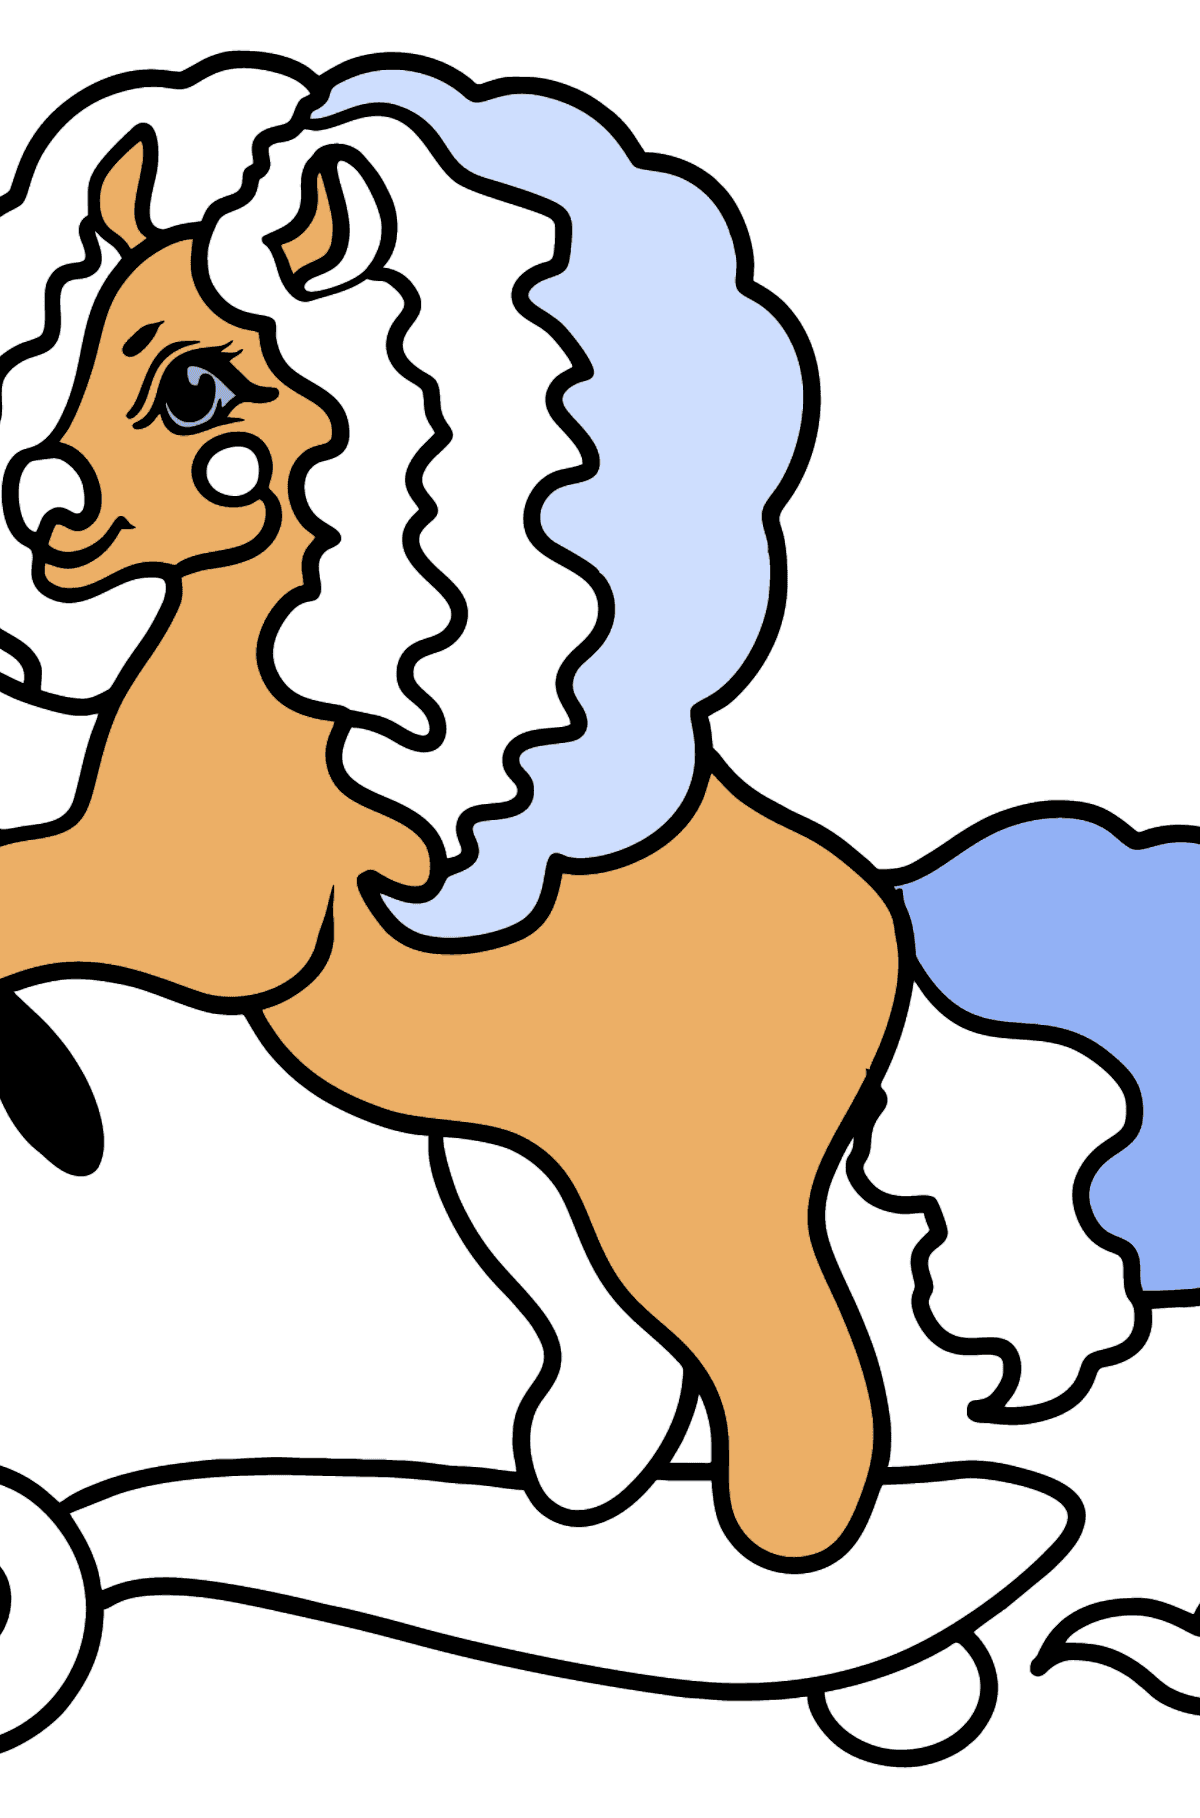 Dibujo para colorear - Pony en scooter - Dibujos para Colorear para Niños